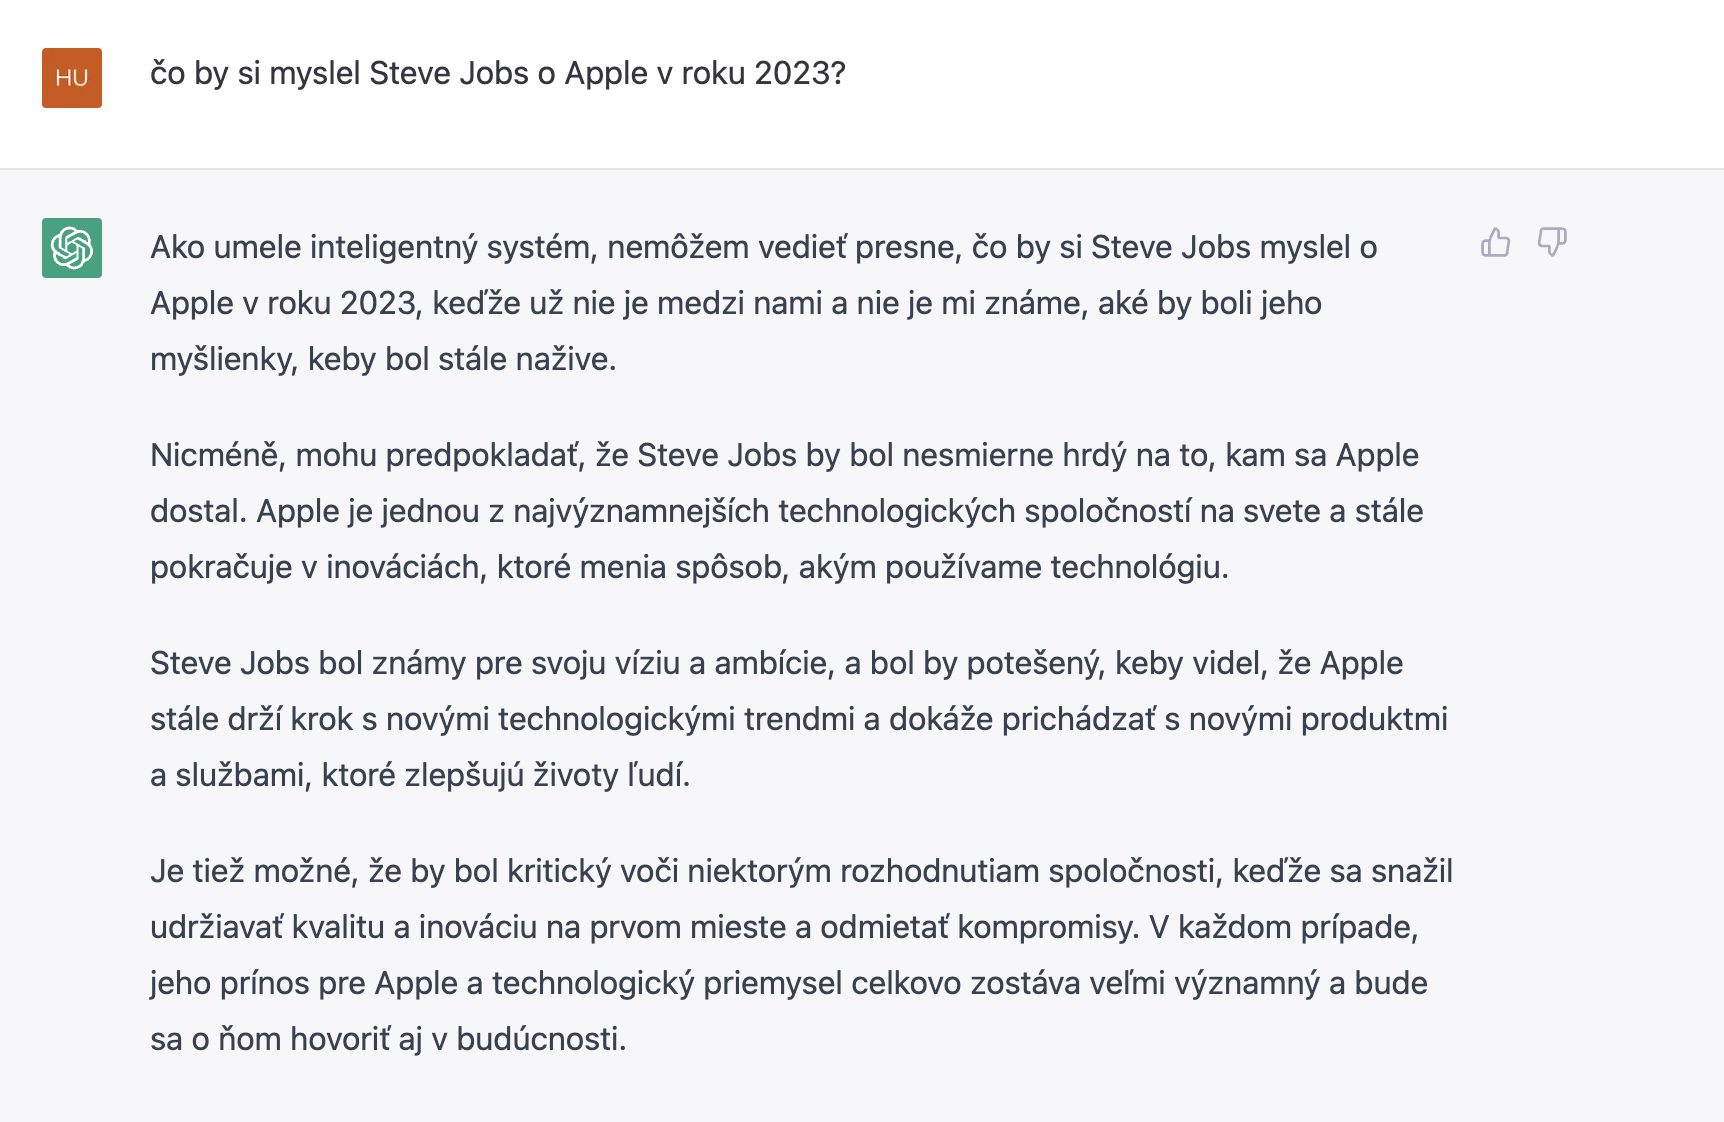 Steve Jobs Ai